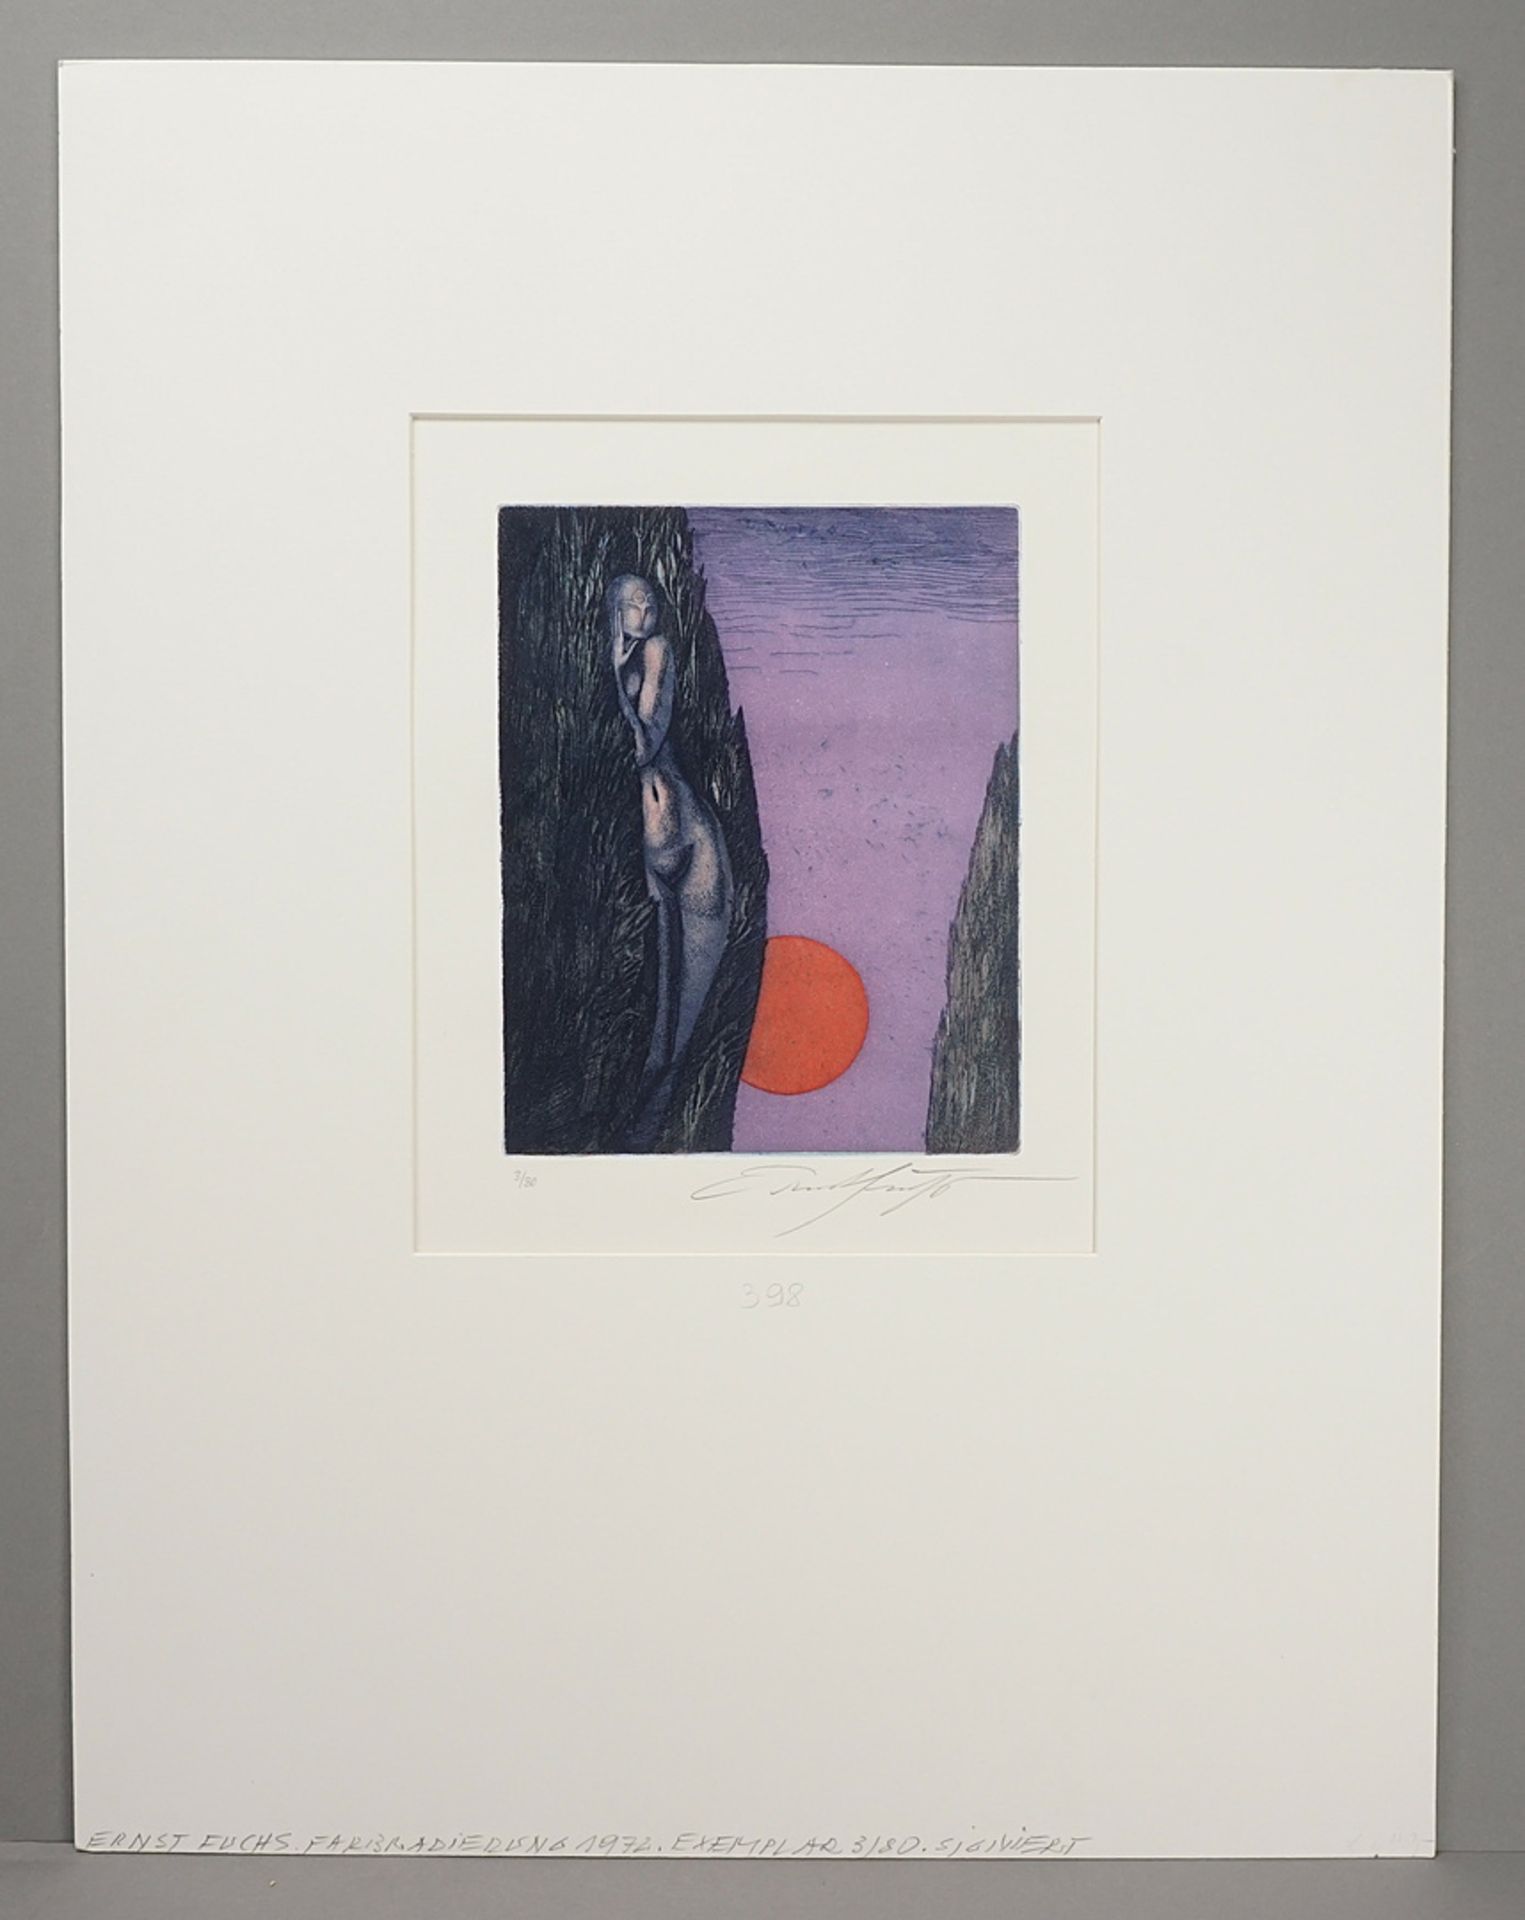 Ernst Fuchs (1930-2015), "Hain der Daphne" (The grove of Daphne) - Image 2 of 4